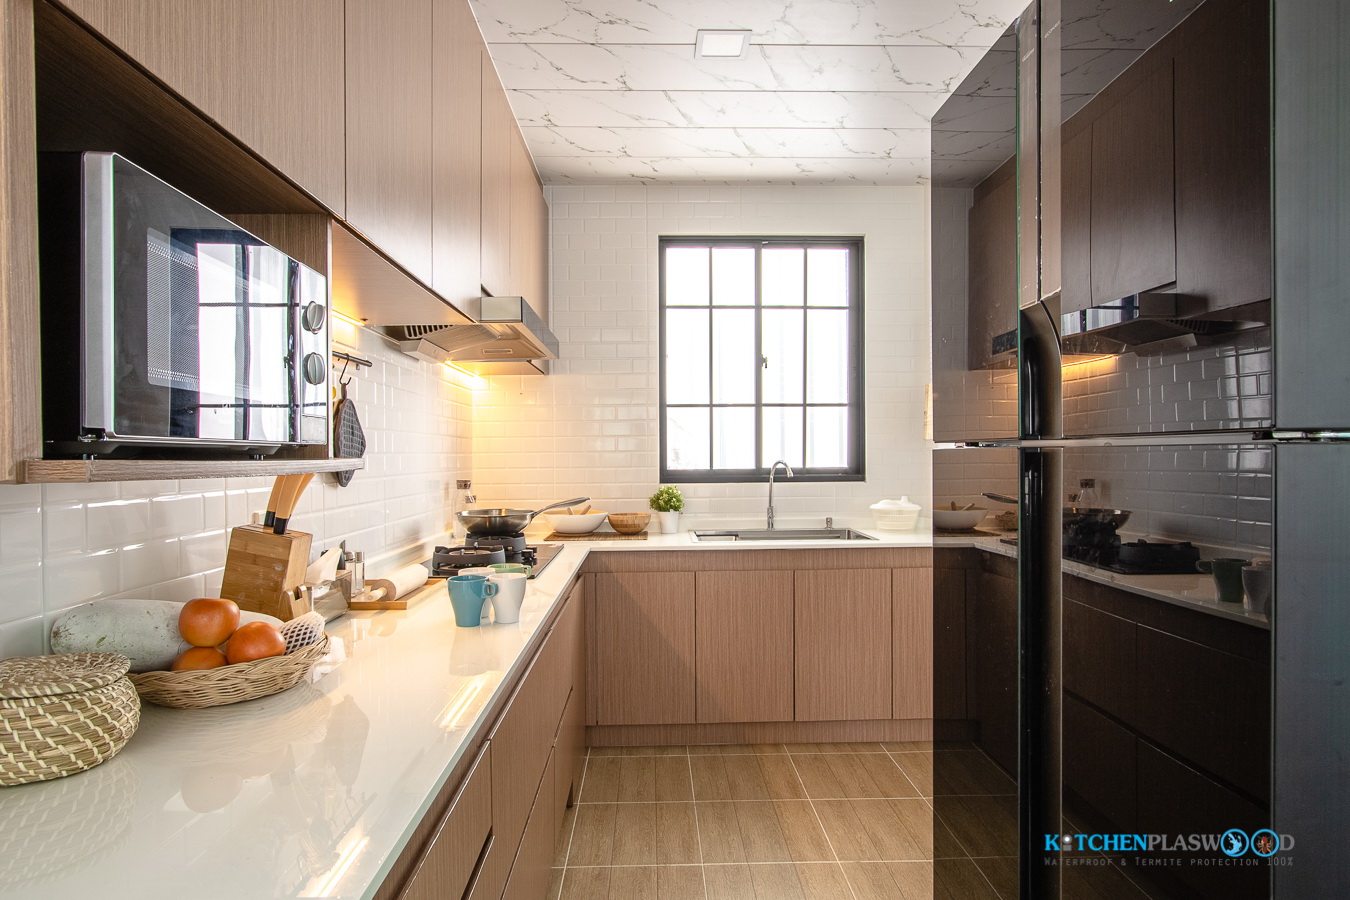 ชุดครัวบิ้วอิน ครัวไทยสไตล์โมเดิร์น บิ้วอินทับโครงปูนสุดแกร่ง 4.70 X 3.10  Mm. - Kitchenform เครื่องใช้ไฟฟ้าและอุปกรณ์ในห้องครัว [ ส่งฟรี  เก็บเงินปลายทาง ]